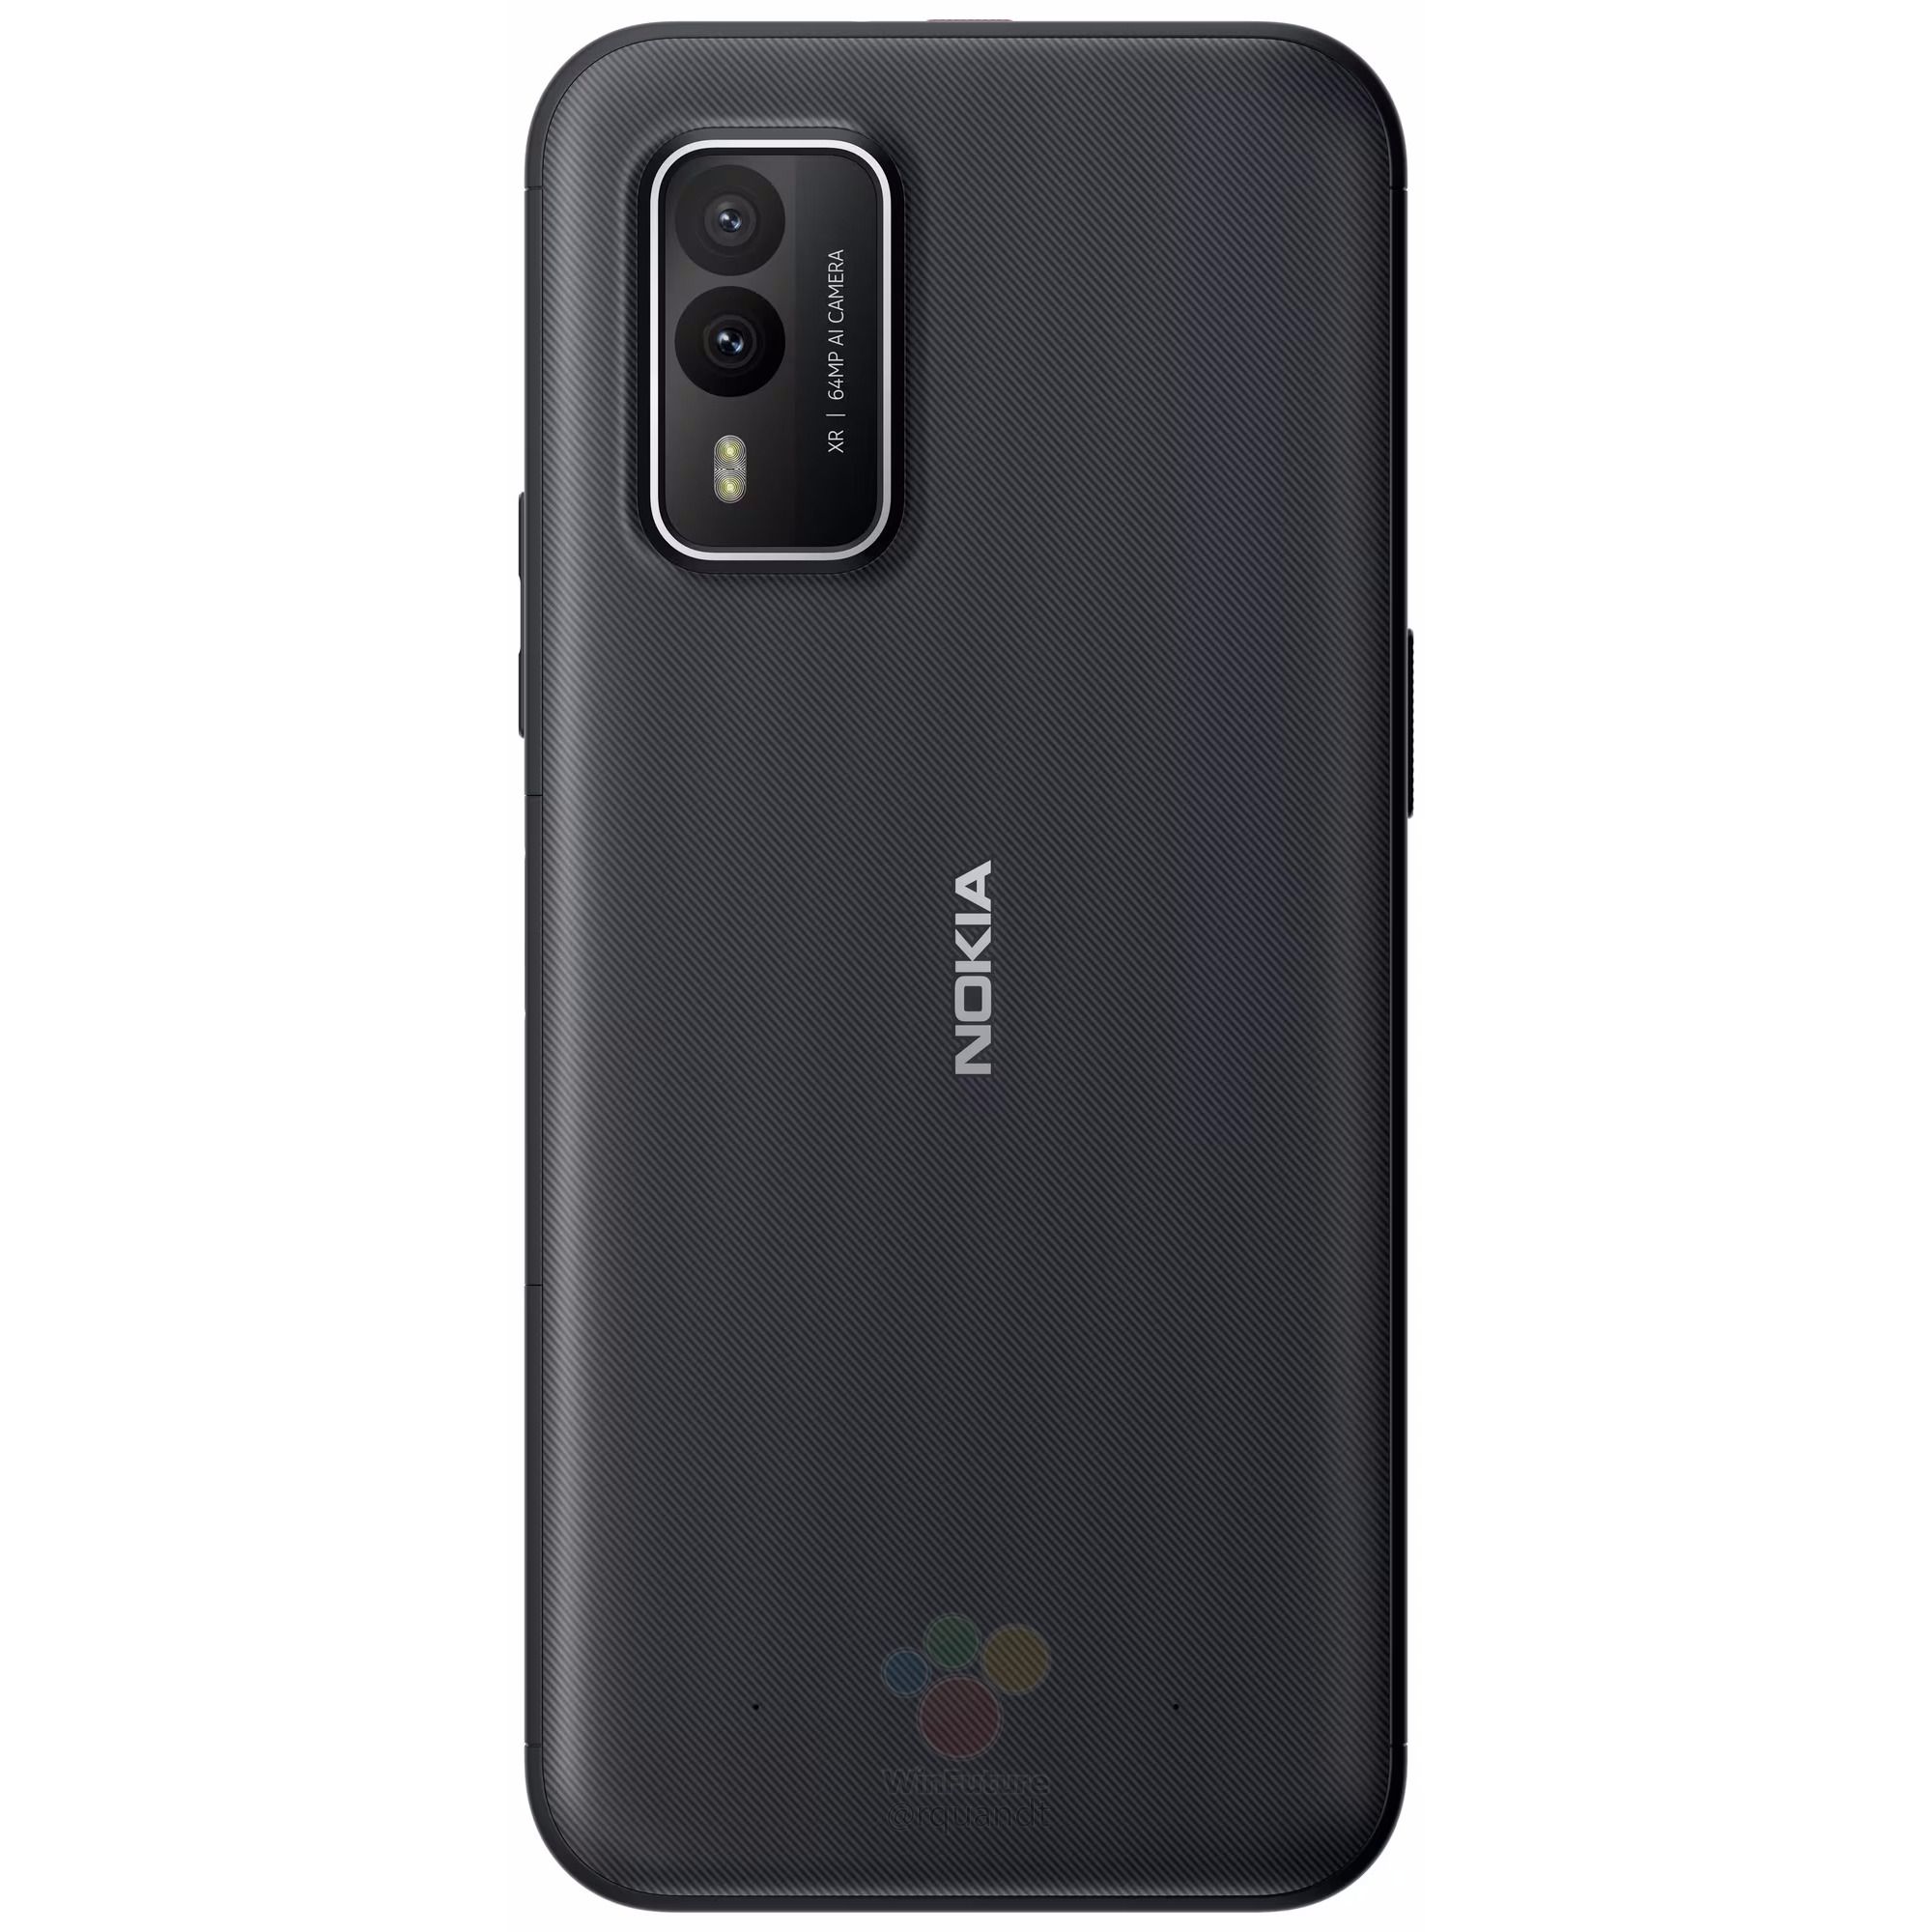 หลุดภาพเรนเดอร์ Nokia XR30 มือถือ 5G พันธุ์อึด สำหรับสายลุย คาดเปิดตัวราว 17,000 บาท